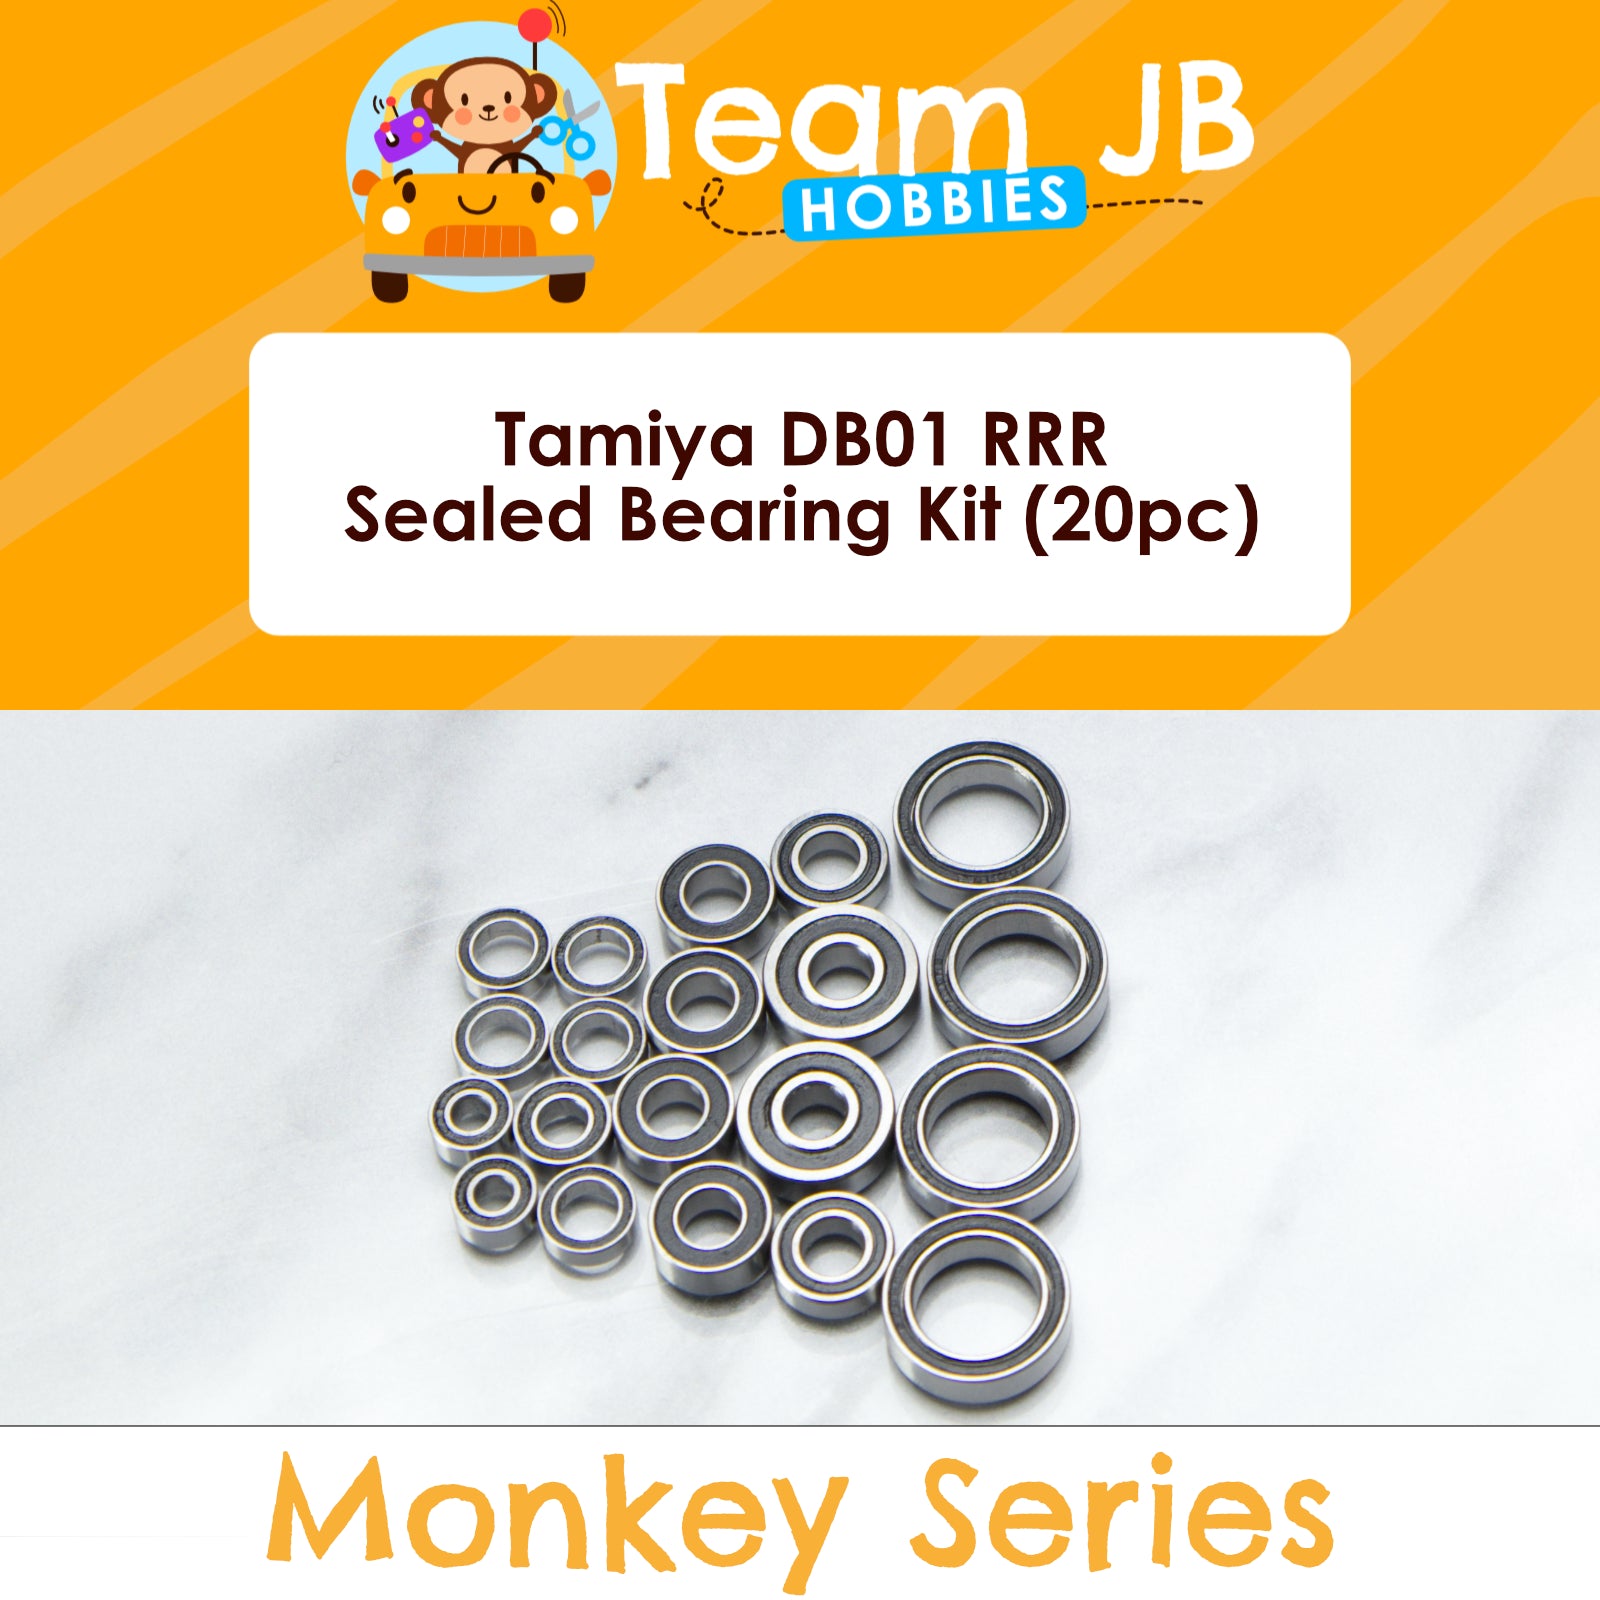 Tamiya DB01 RRR - Sealed Bearing Kit